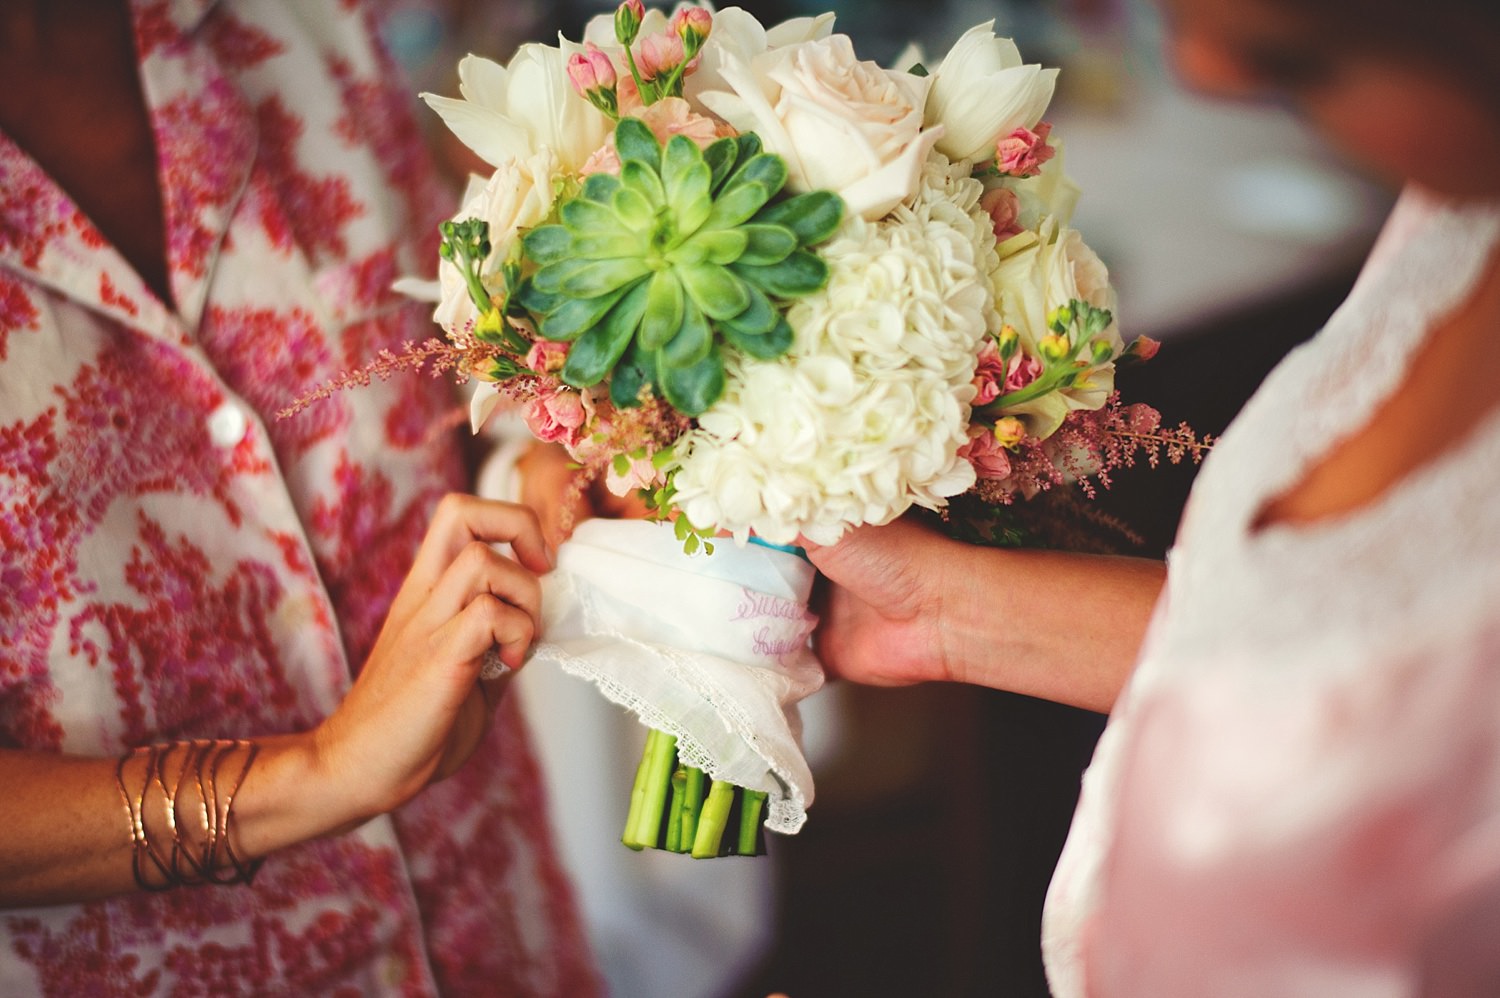 pierre's restaurant wedding: putting handkerchief on bouquet  